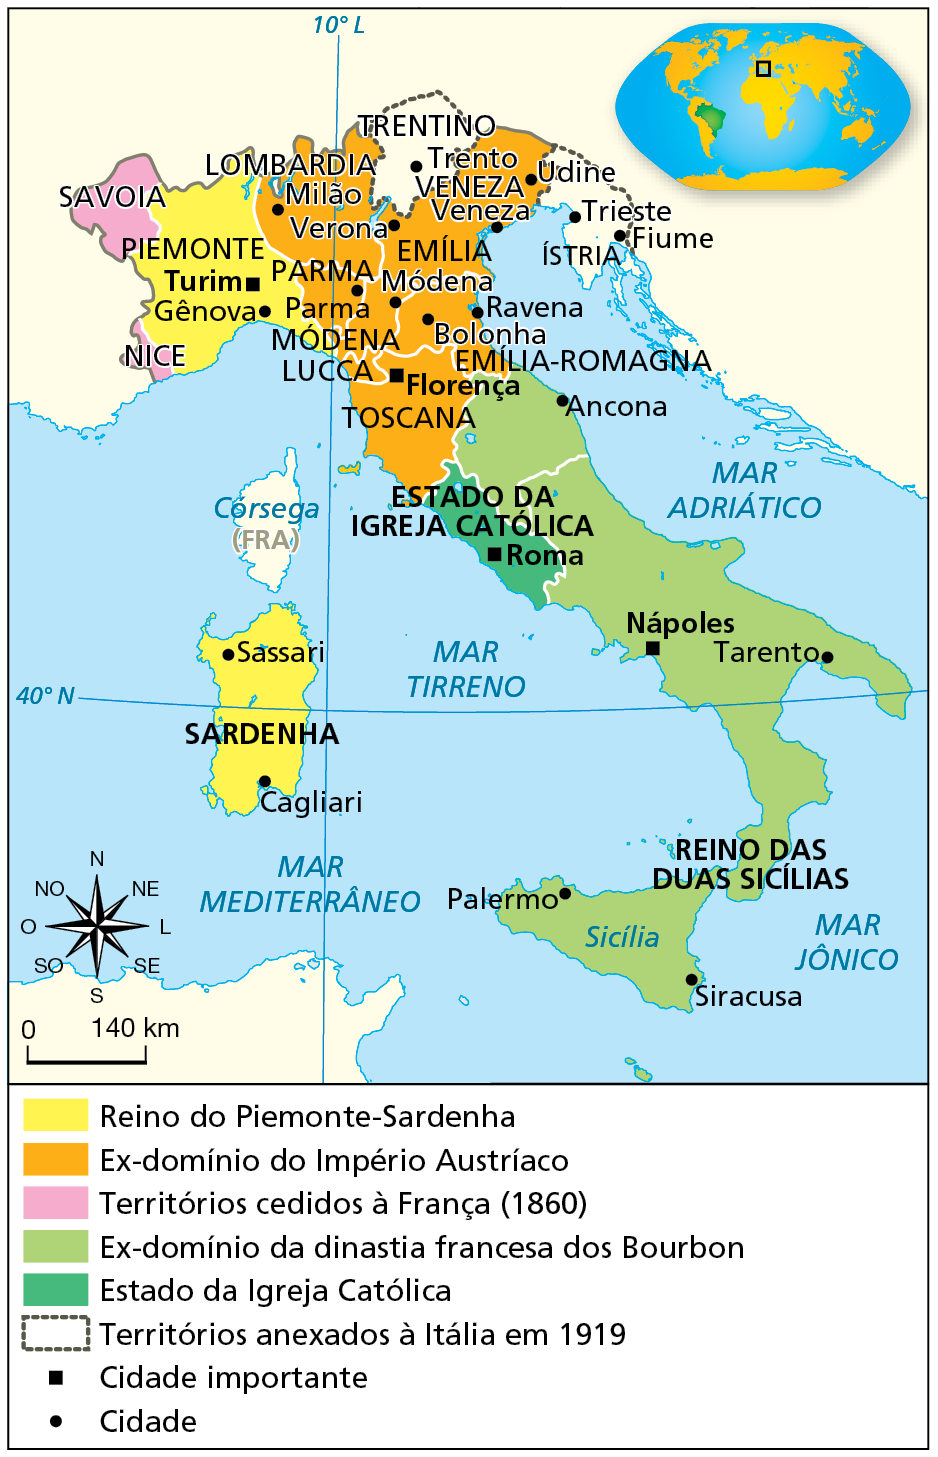 Mapa. Península Itálica (1815-1860). Destaque para a Península Itálica, localizada no sul da Europa, entre os mares Mediterrâneo, a sudoeste, e Tirreno, a oeste, Jônico, a sudeste, e Adriático, à leste. Em amarelo, Reino do Piemonte-Sardenha, compreendendo área noroeste do continente, envolvendo as cidades de Turim e Gênova, e a ilha de Sardenha, com as cidades de  Cagliari e Sassari. 
Em laranja, Ex-domínio do Império Austríaco, compreendendo o norte da Península Itálica, abarcando regiões como a Lombardia, Veneza, Emília, Emília-Romagna, Toscana, Lucca, Módena, e Parma, incluindo as cidades de Florença, Parma, Verona, Milão, Módena, Bolonha, Ravena, Veneza e Udine.
Em rosa, Territórios cedidos à França (1860), compreendendo a Savoia, a noroeste de Piemonte, e Nice, a sudoeste de Piemonte, banhada pelo Mar Mediterrâneo, em território que hoje corresponde à Mônaco e à França. 
Em verde claro, Ex-domínio da dinastia francesa dos Bourbon, compreendendo o Reino das Duas Sicílias, que engloba a ilha da Sicília, e o sul da Península Itálica, incluindo cidades como Siracusa e Palermo, Nápoles, Tarento e Ancona. 
Em verde escuro, Estado da Igreja Católica, compreendendo toda a região ao redor da cidade de Roma. Em linha tracejada, Territórios anexados à Itália em mil novecentos e dezenove, compreendendo a região de Trentino, no norte da península, incluindo a cidade de Trento. E a região da Ístria, a leste de Veneza, incluindo as cidades de Trieste e Fiume, localizada na atual Croácia. 
Na parte inferior, rosa dos ventos e escala de 0 a 140 quilômetros.